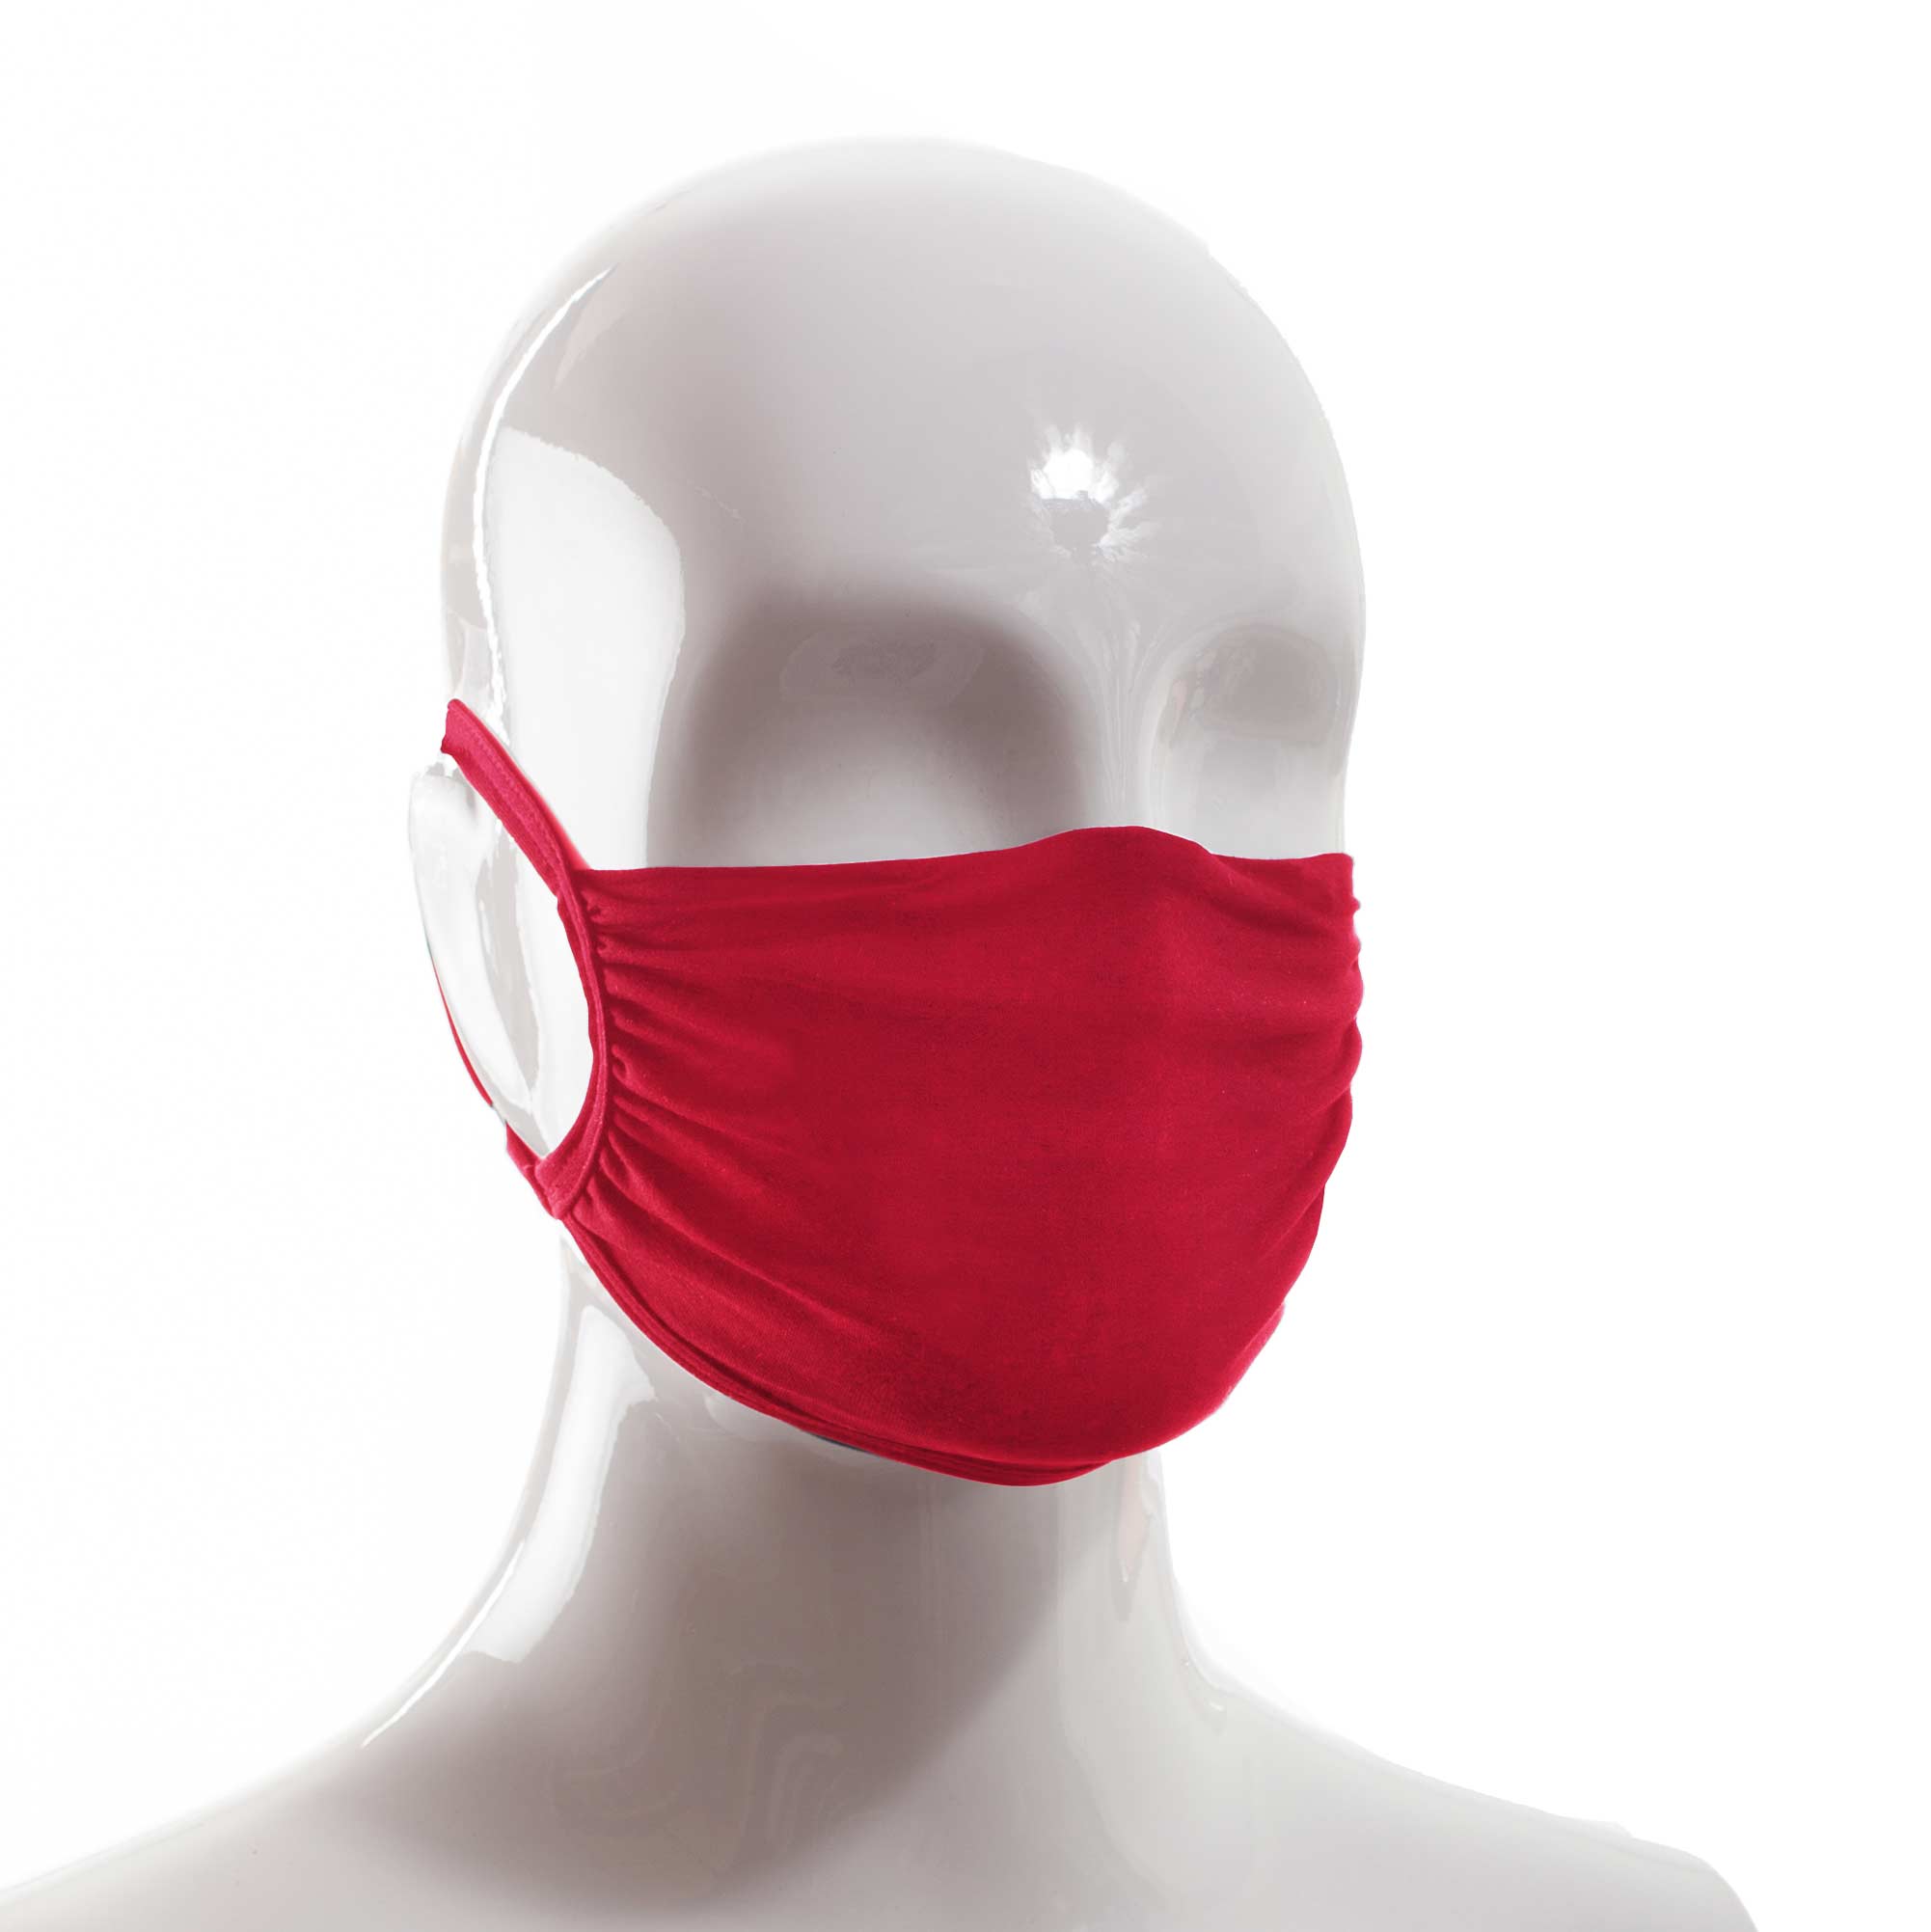 Die Baumwoll Mund-Nasen Maske BWM5 von der Wonneberger Manufaktur ist eine textile Behelfsmaske, kein zertifizierter Mundschutz.

Sie schützt nur bedingt vor Ansteckung. Ihr eigentlicher Zweck ist es, den Atem des Trägers zu filtern und dadurch seine Umgebung zu schützen.

Daher muss die…